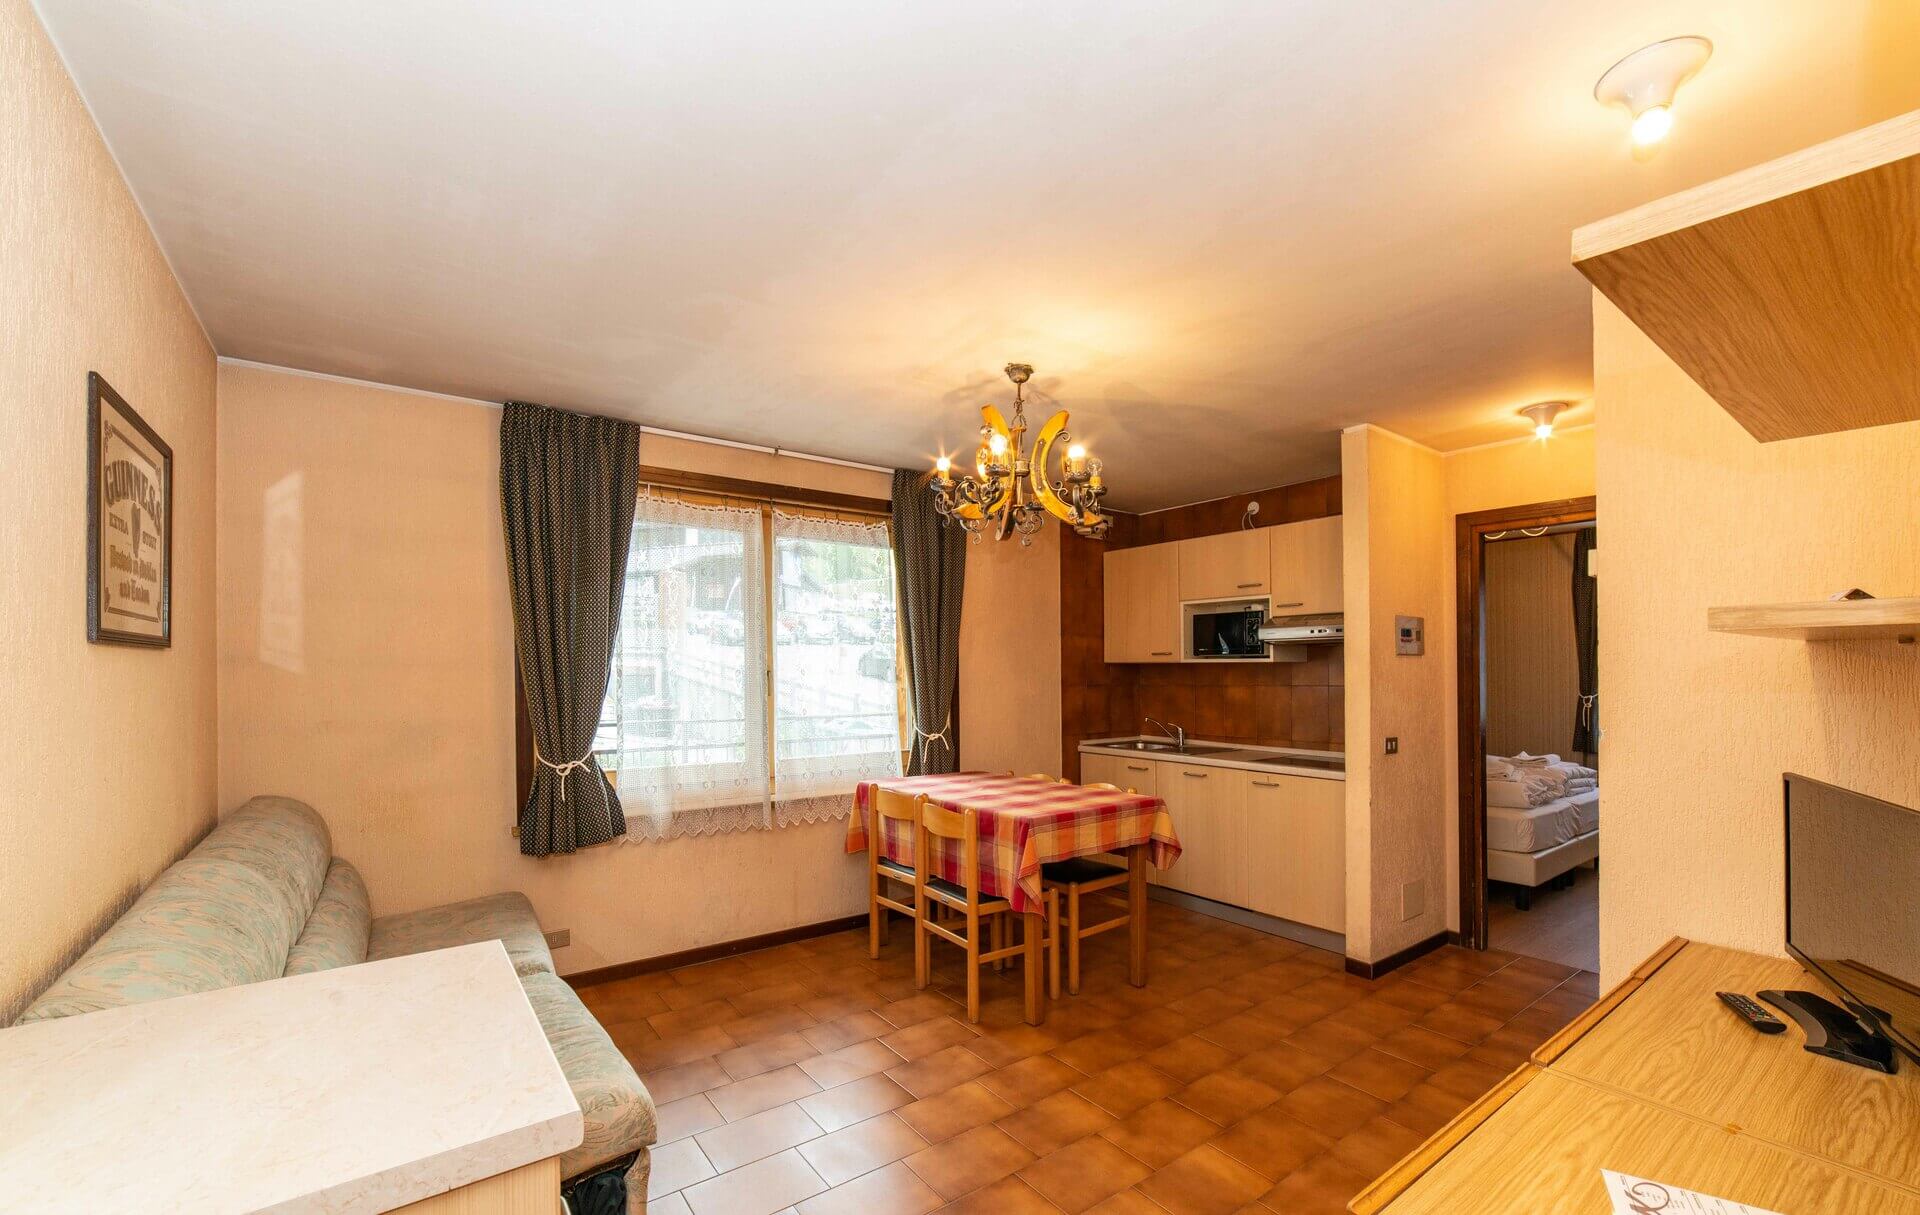 One-bedroom Casalini Livigno